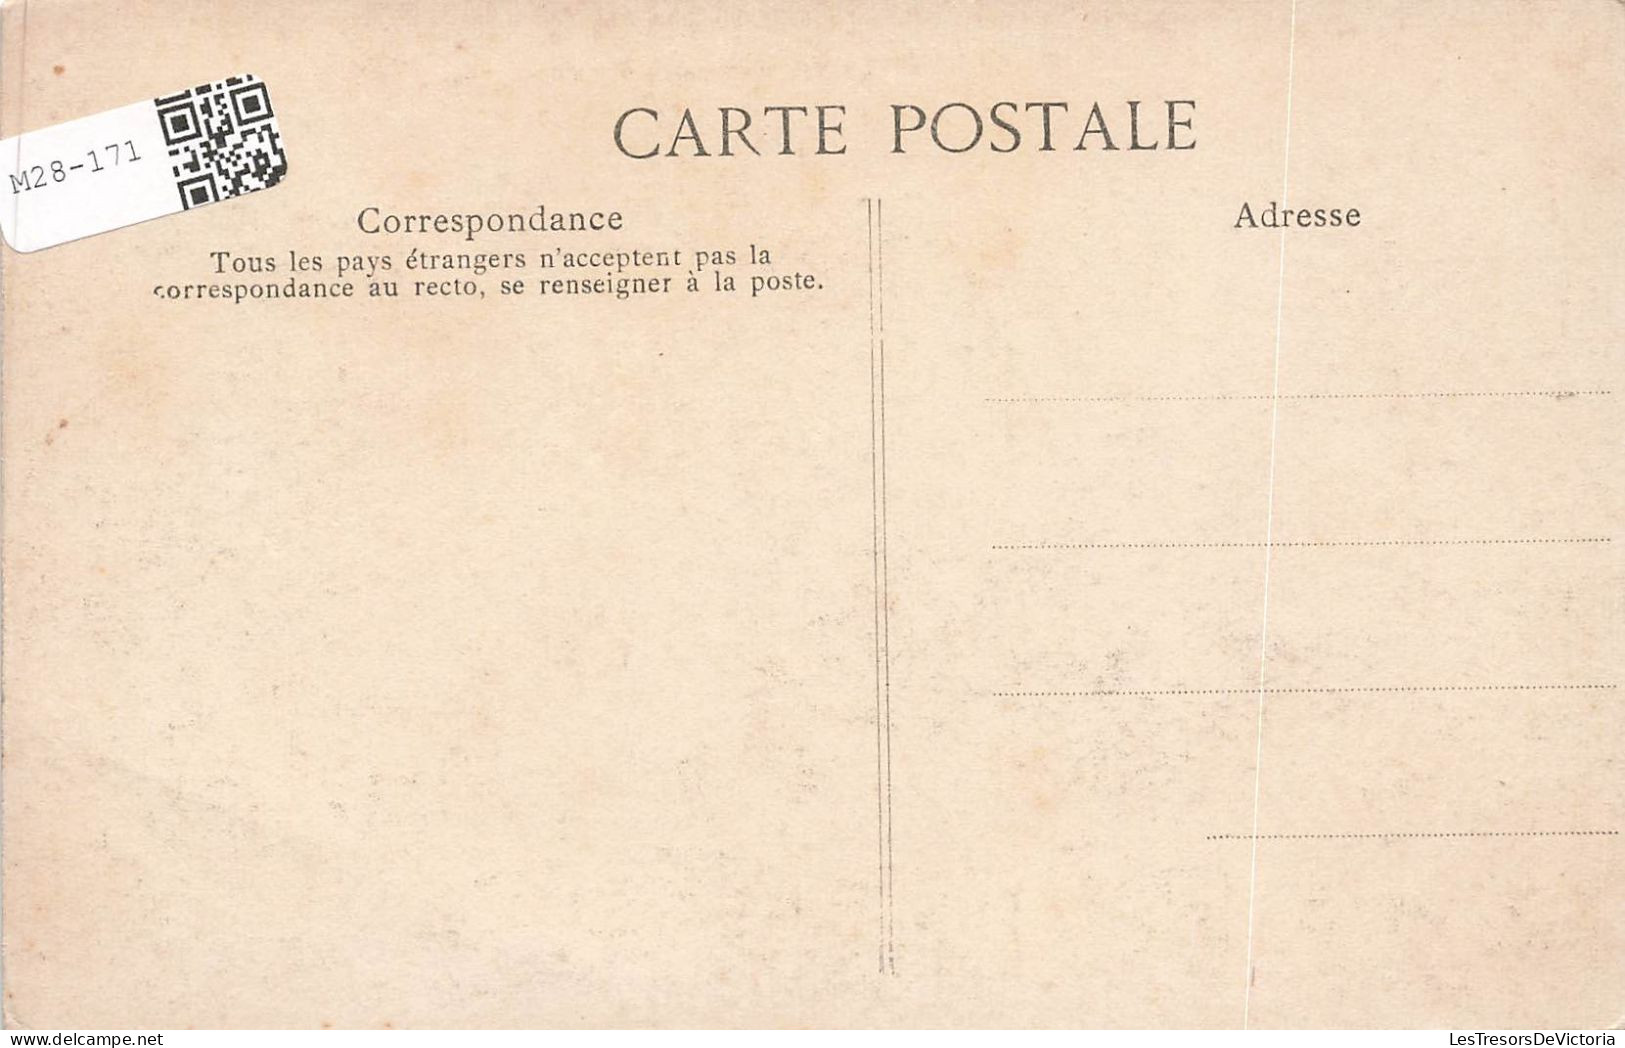 FRANCE - Corbeil - Vue Générale De La Ville - Carte Postale Ancienne - Corbeil Essonnes